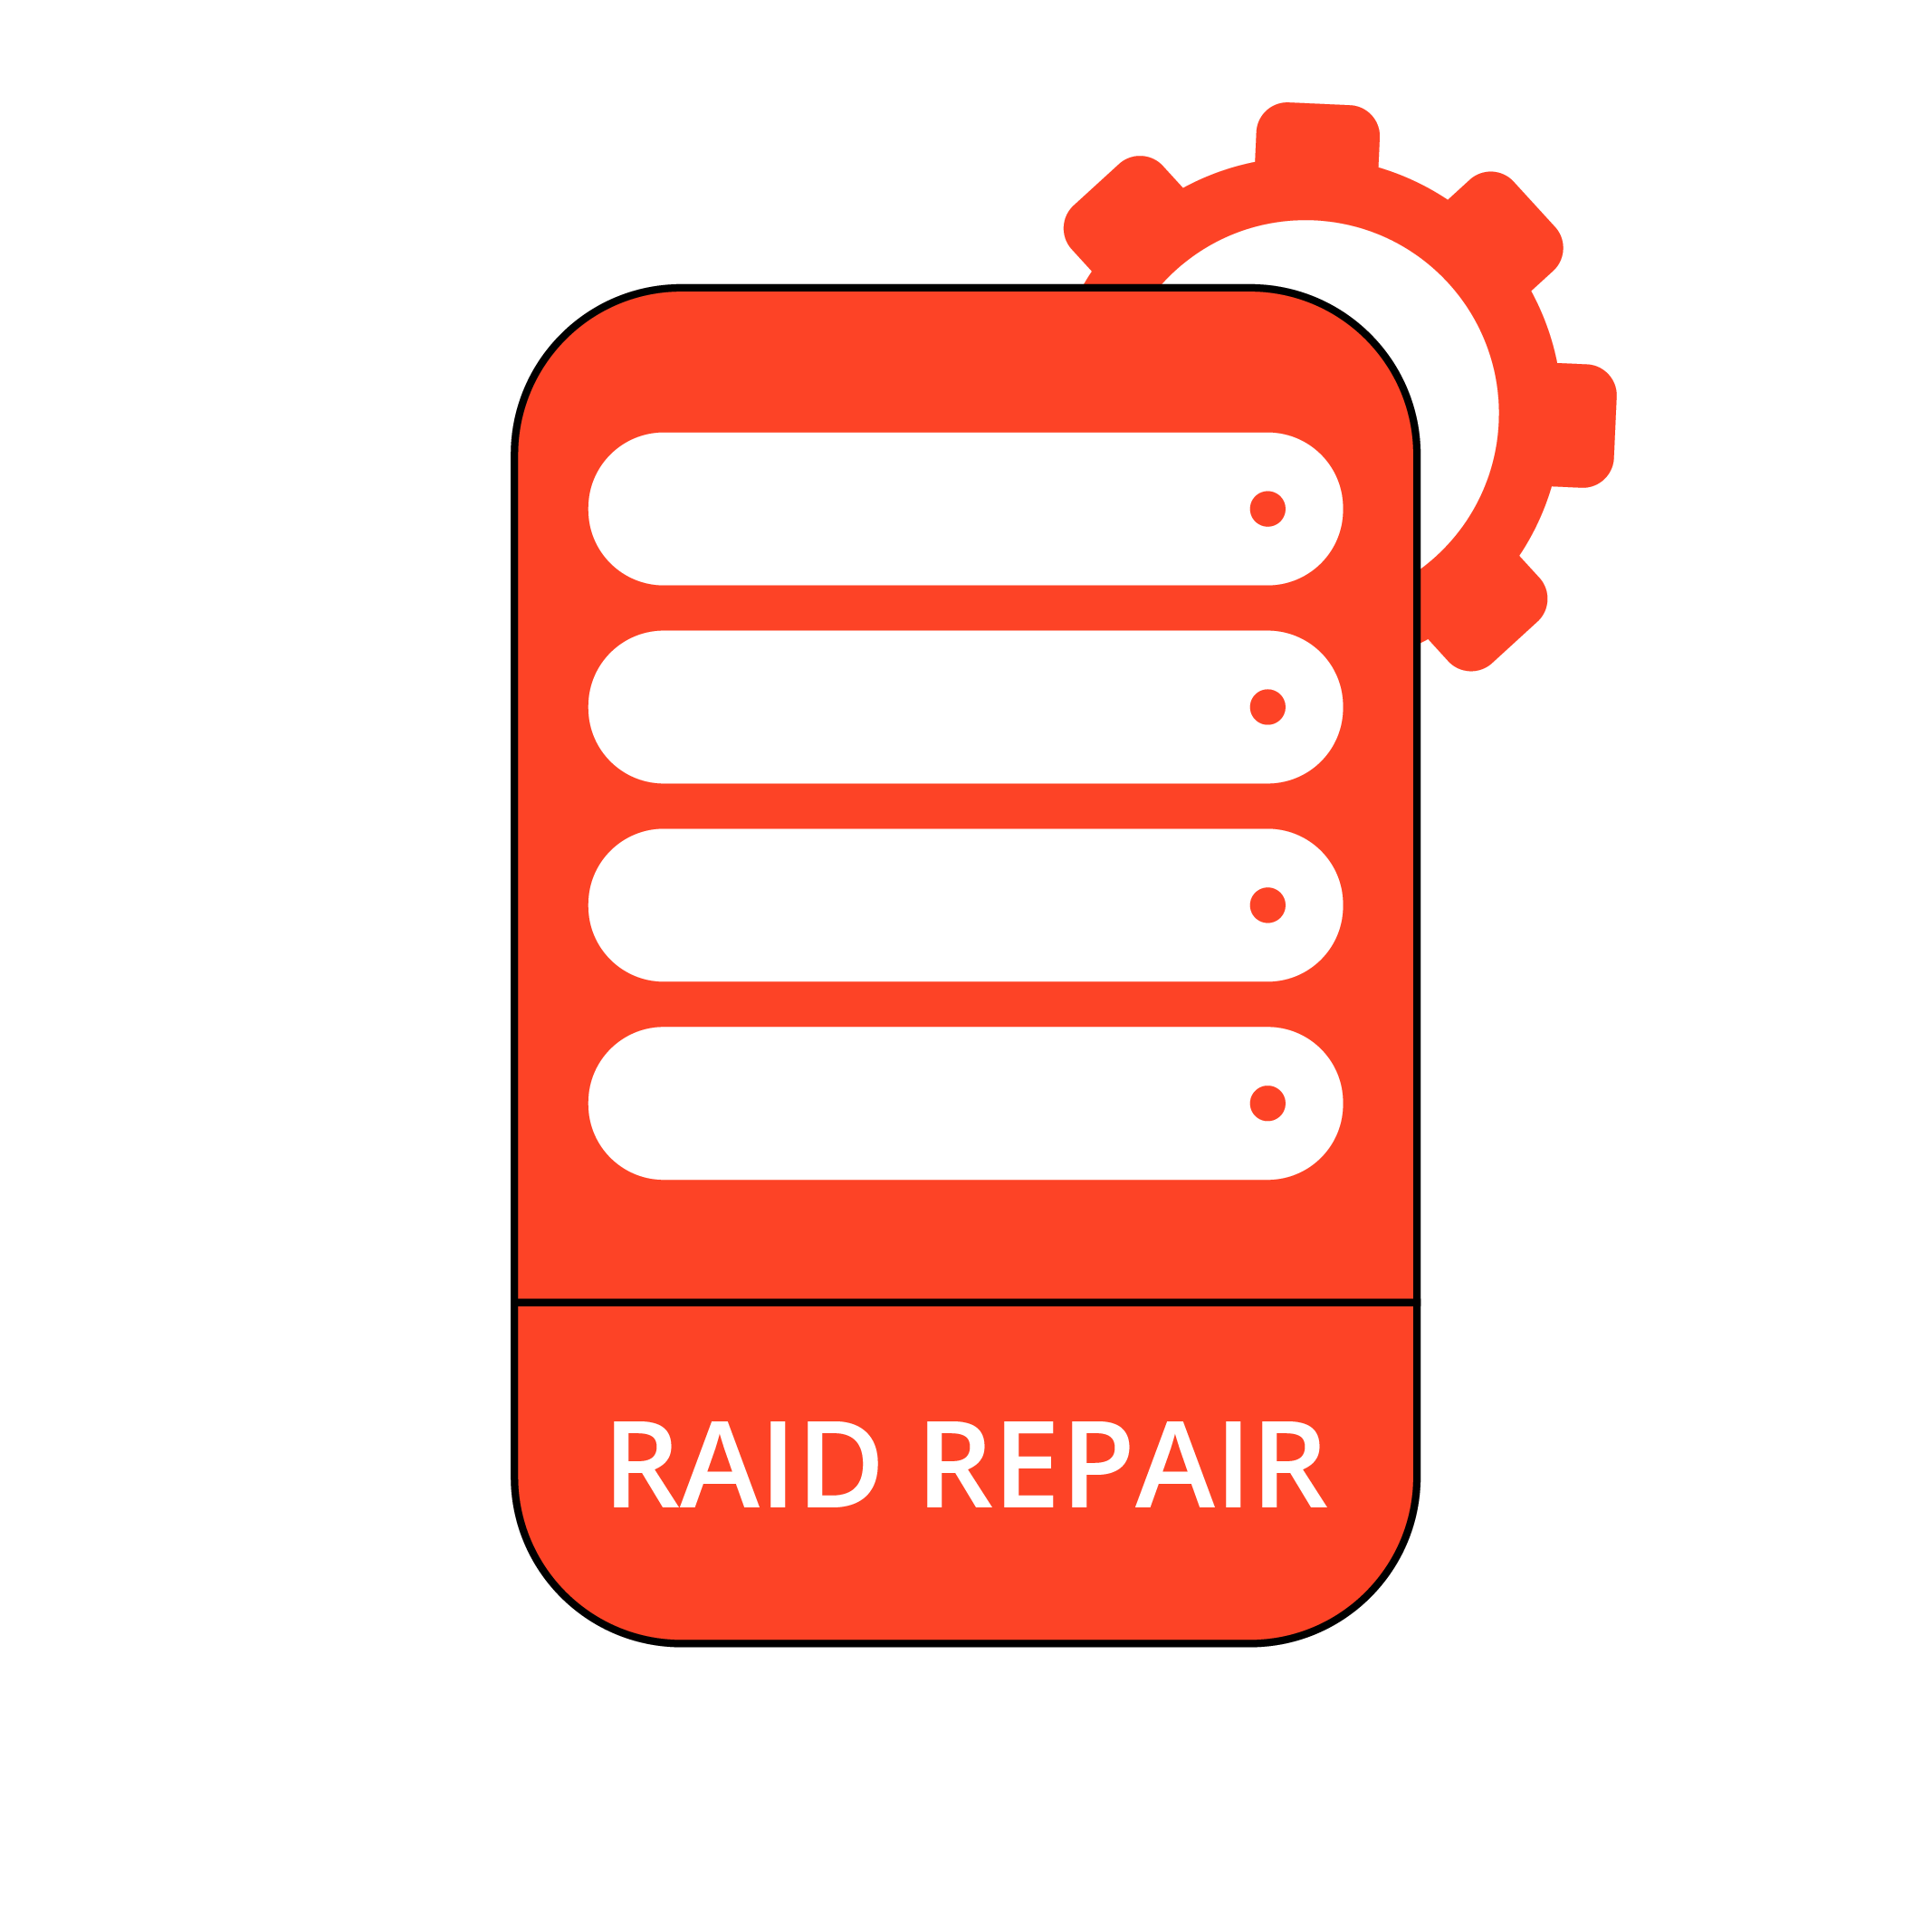 RAID Repair Services